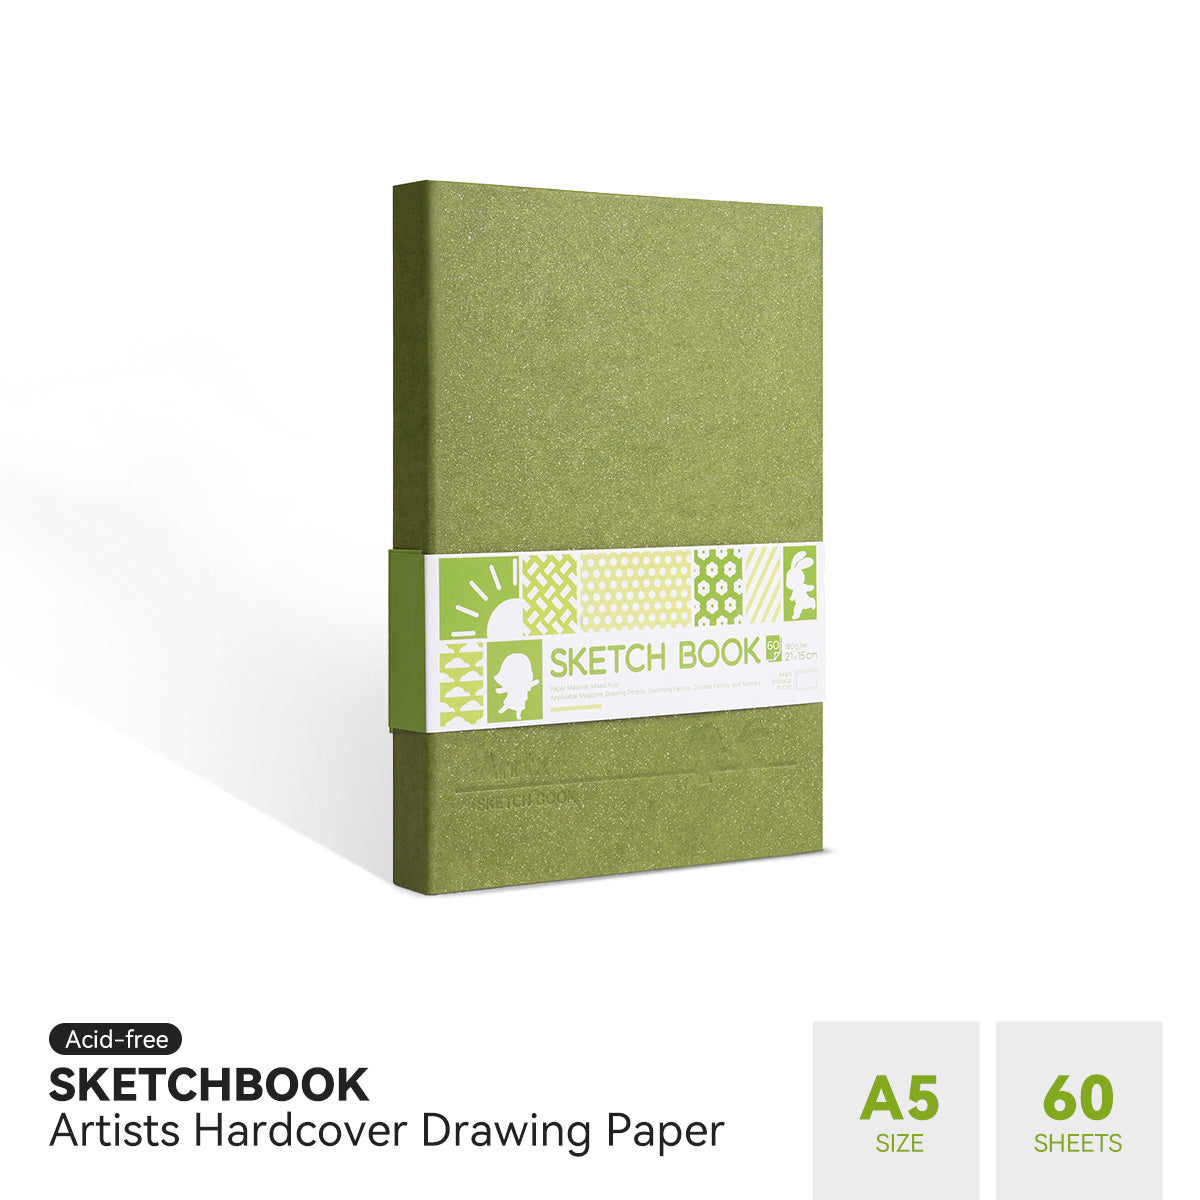 Arrtx Sketchbook 56 Sheets, Marker Paper Pad for Alcohol Marker